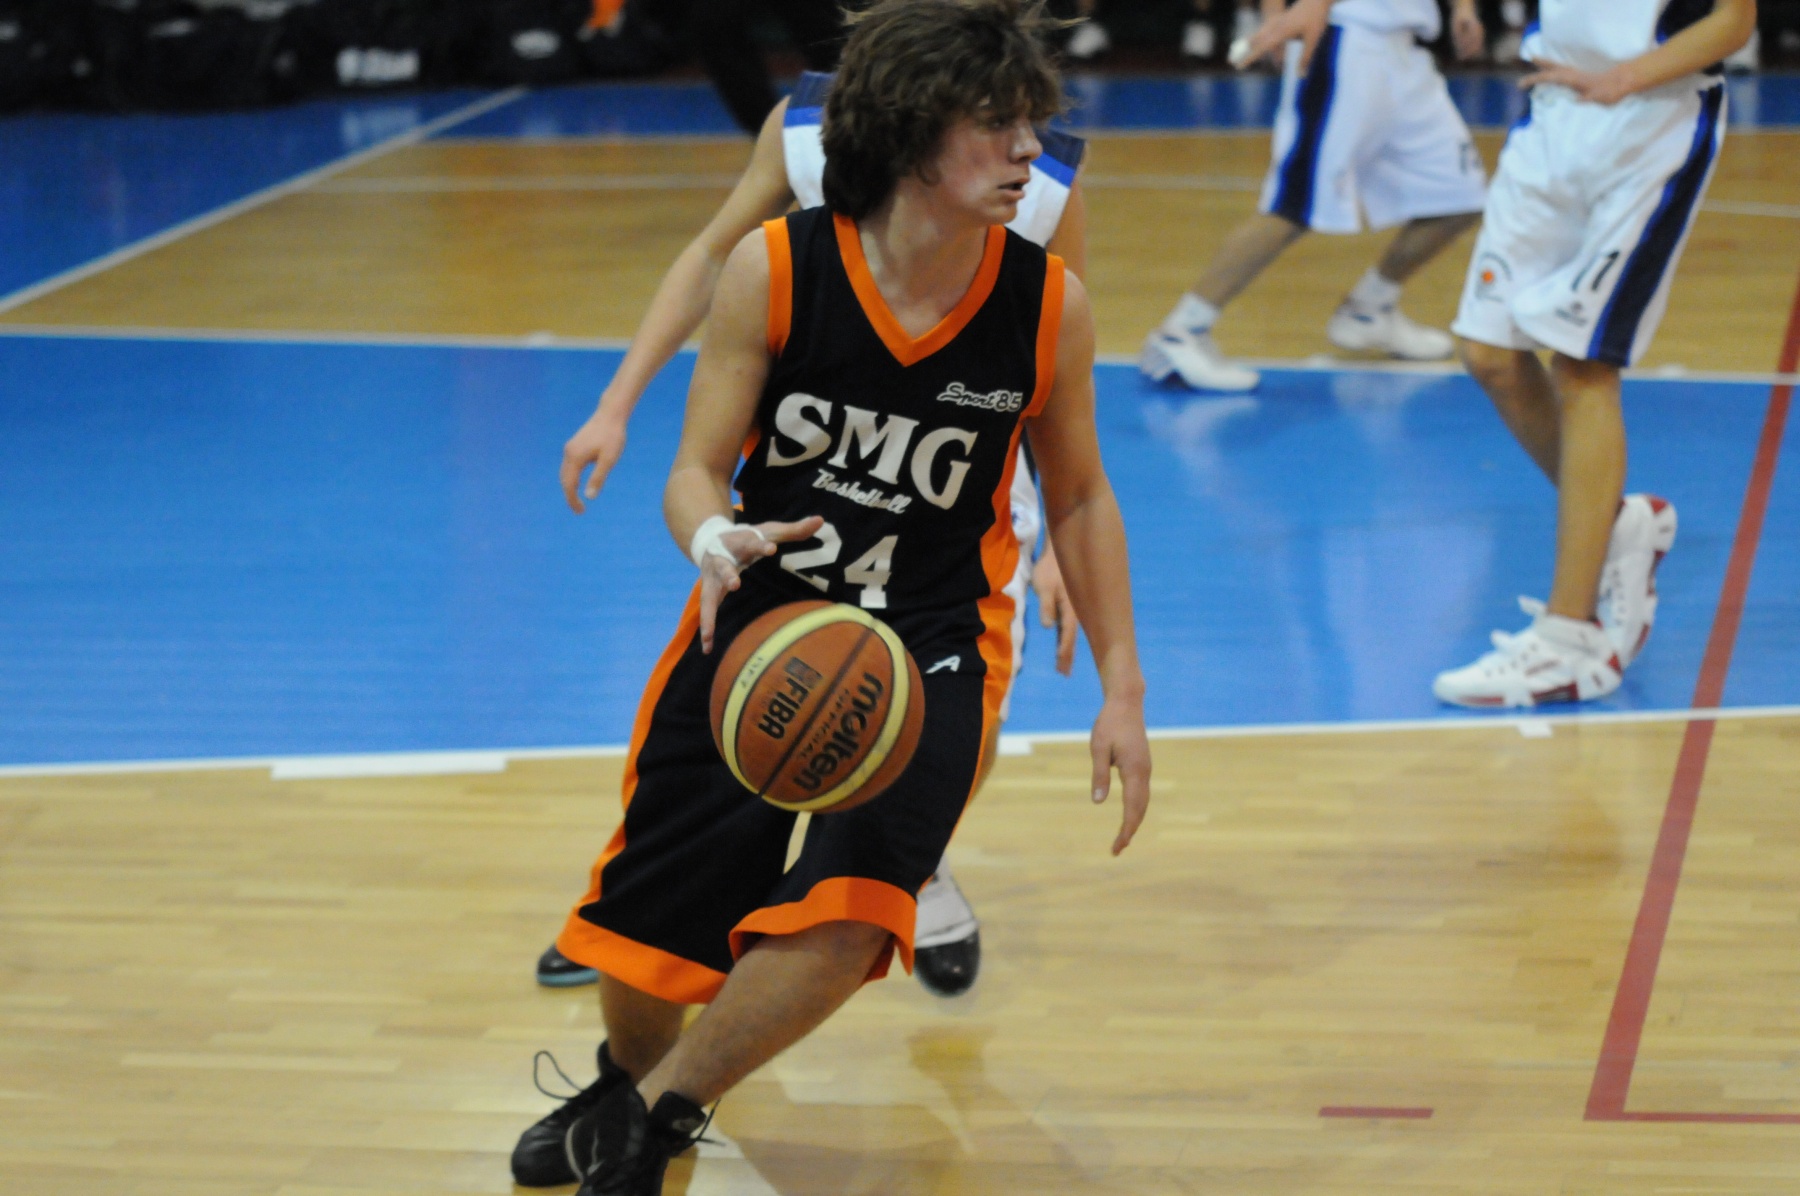 2010-02-20-U15Ecc-Eurobasket-SMG-095